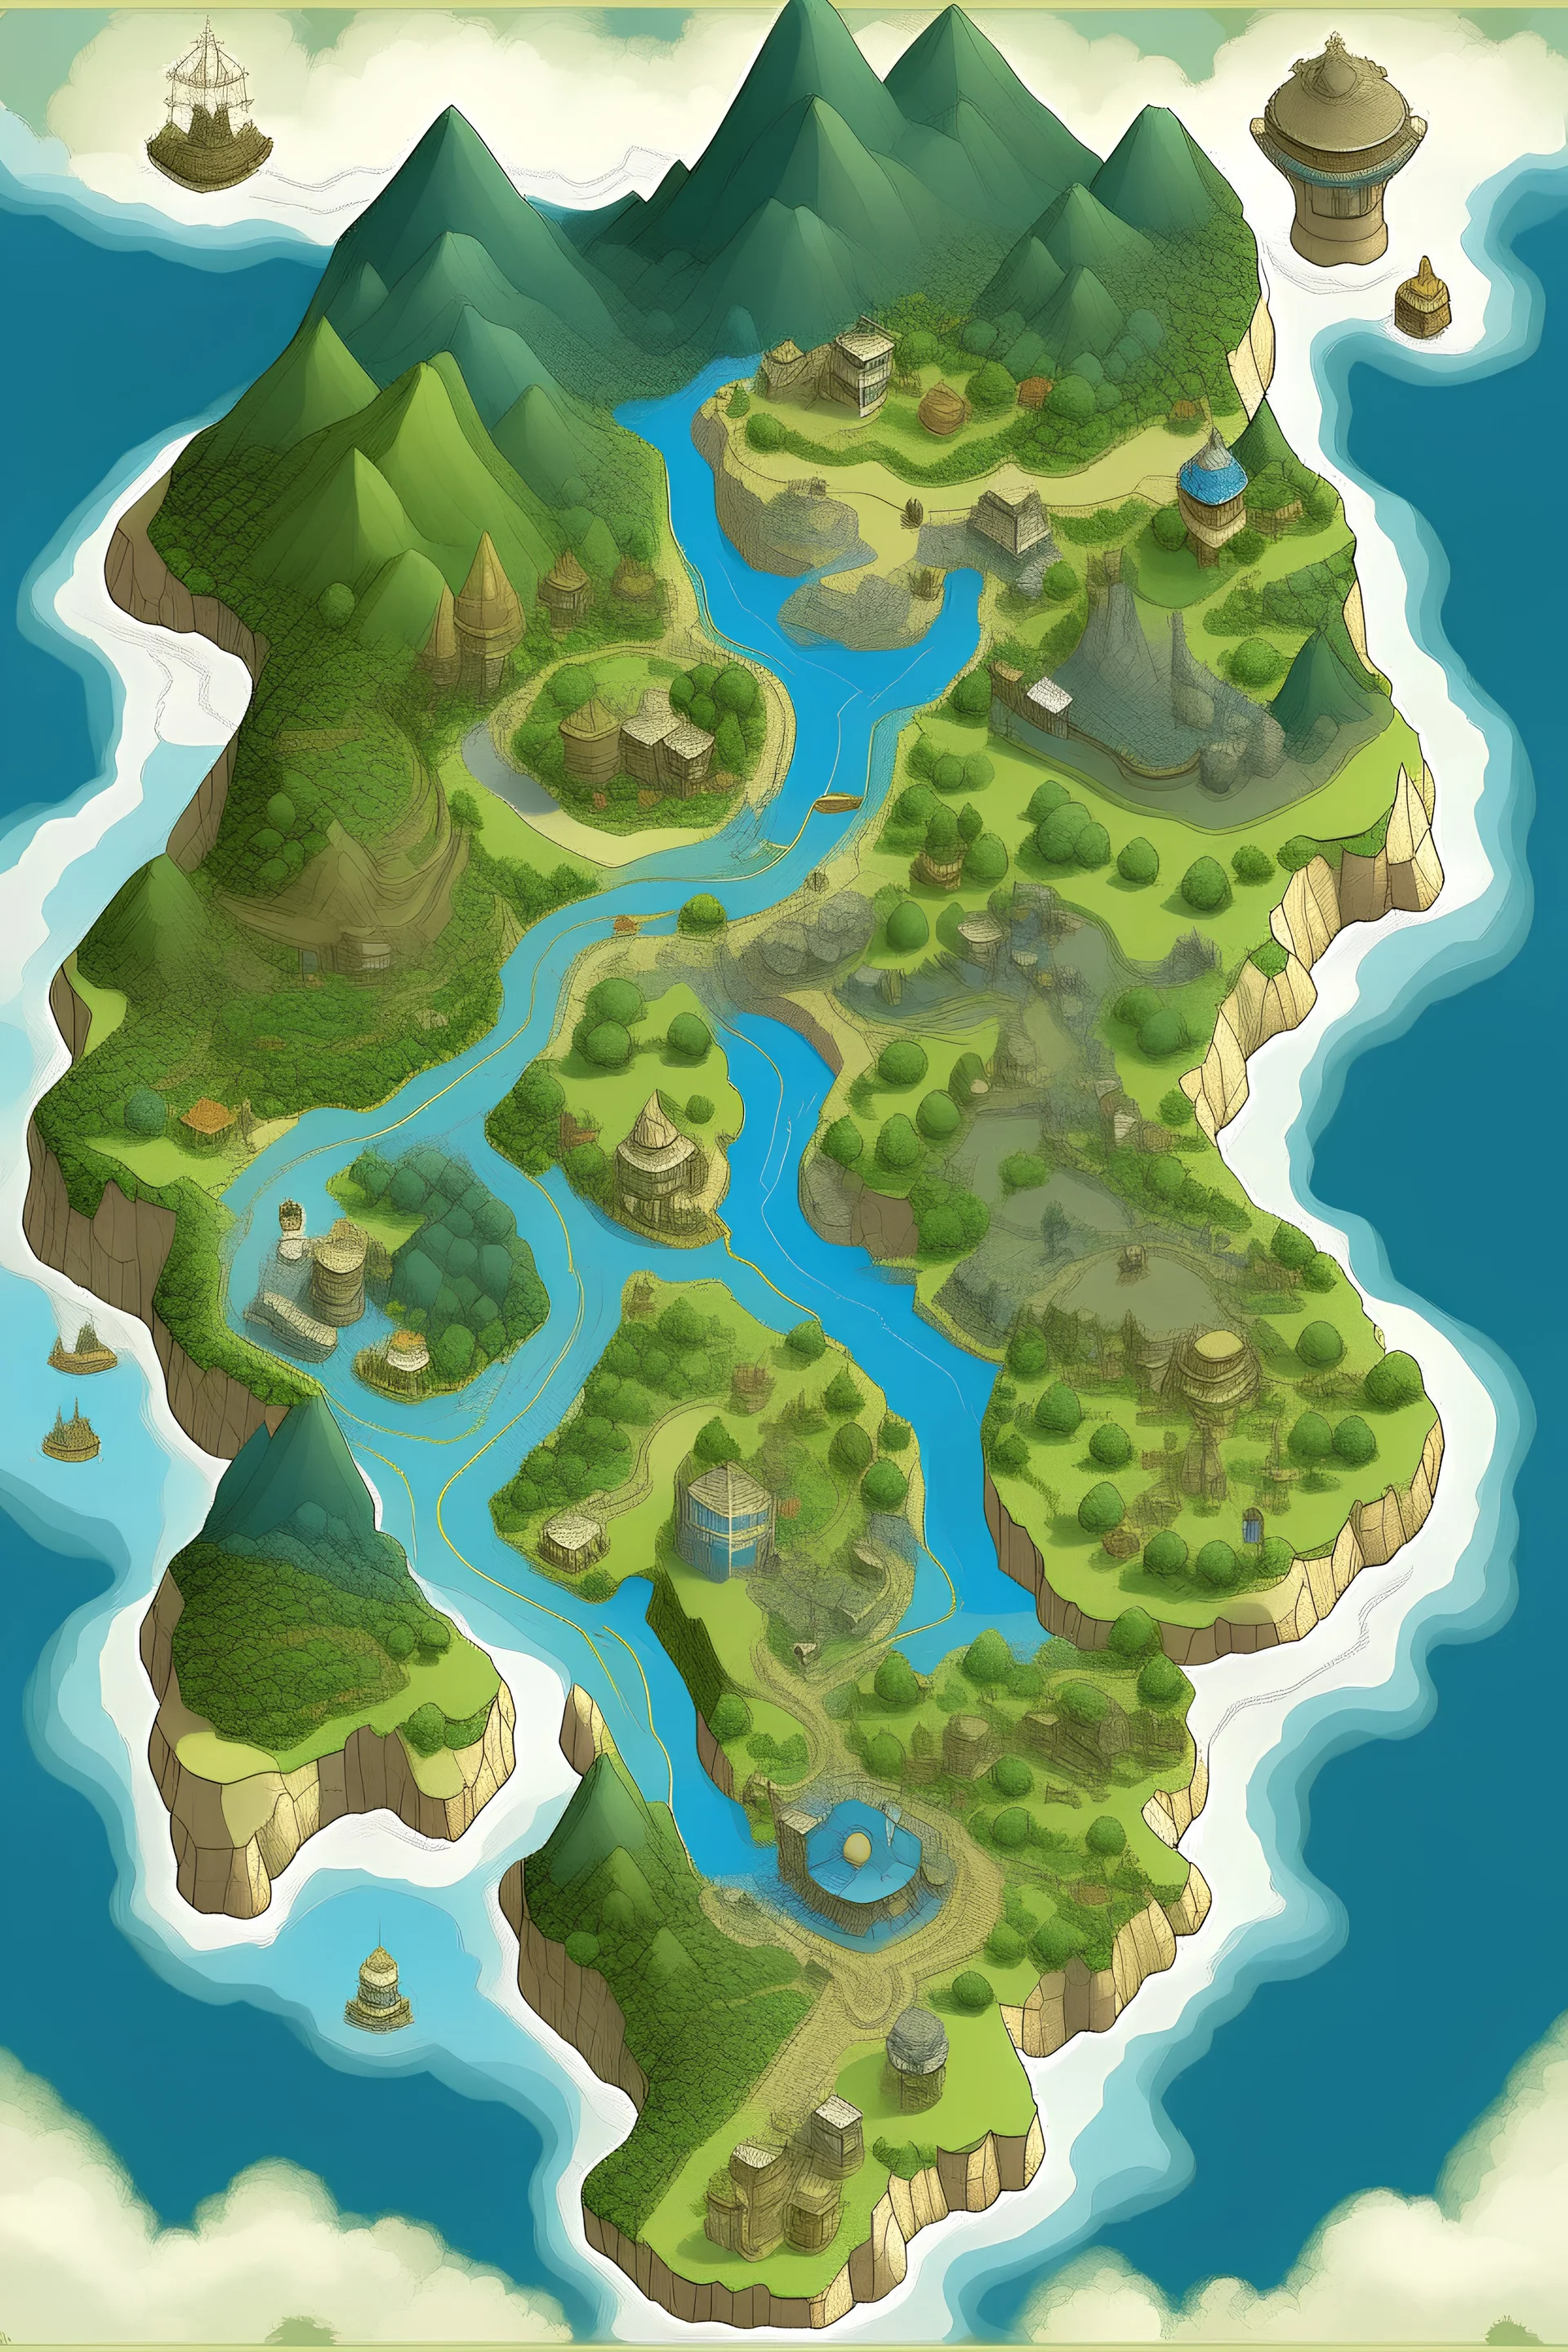 Island of sodor map